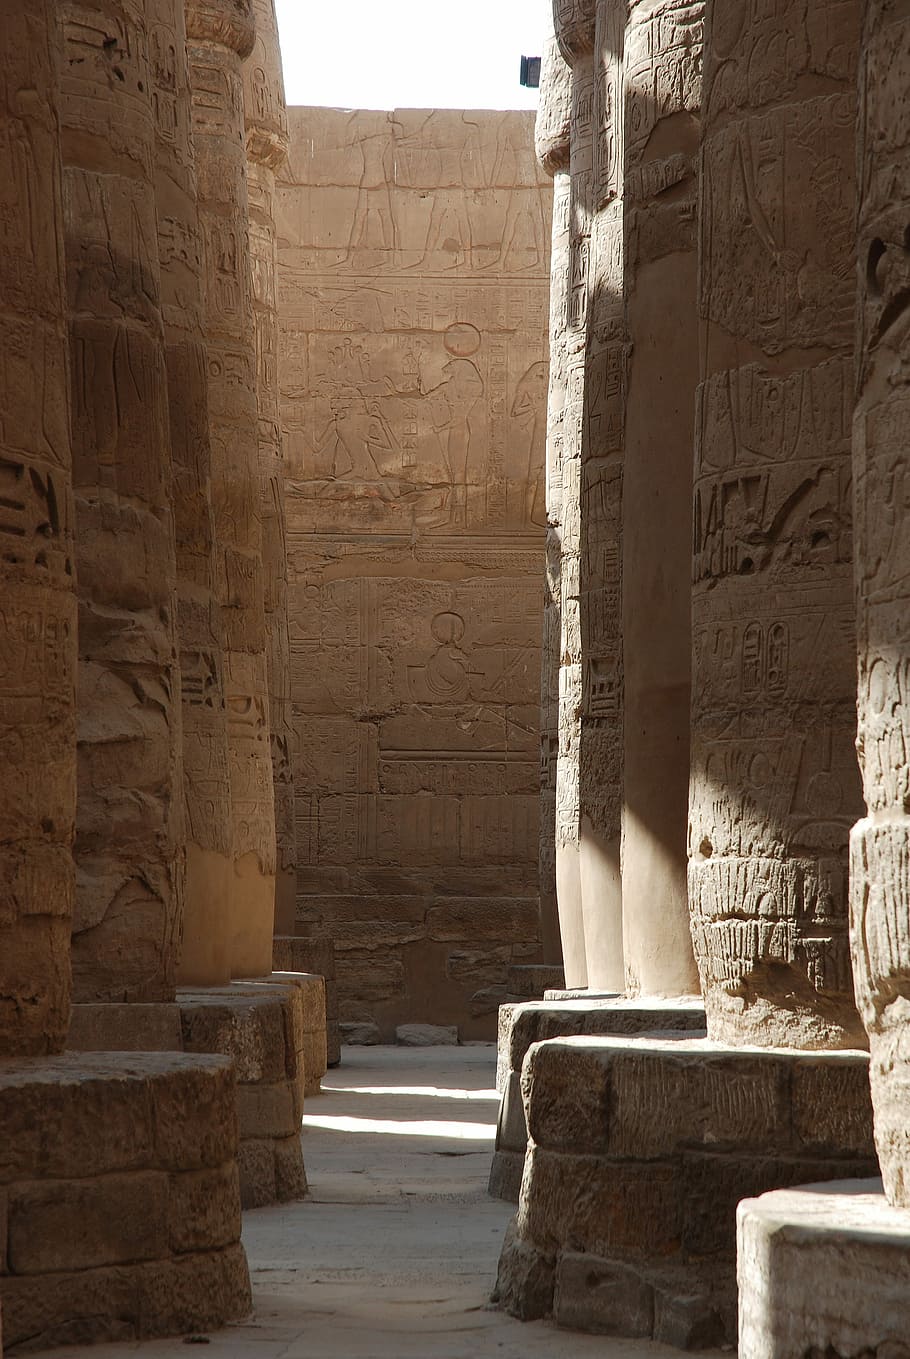 Egipto, Antigua, Arqueología, Luxor, Karnak, templo, monumentos, columnas, histórico, escultura